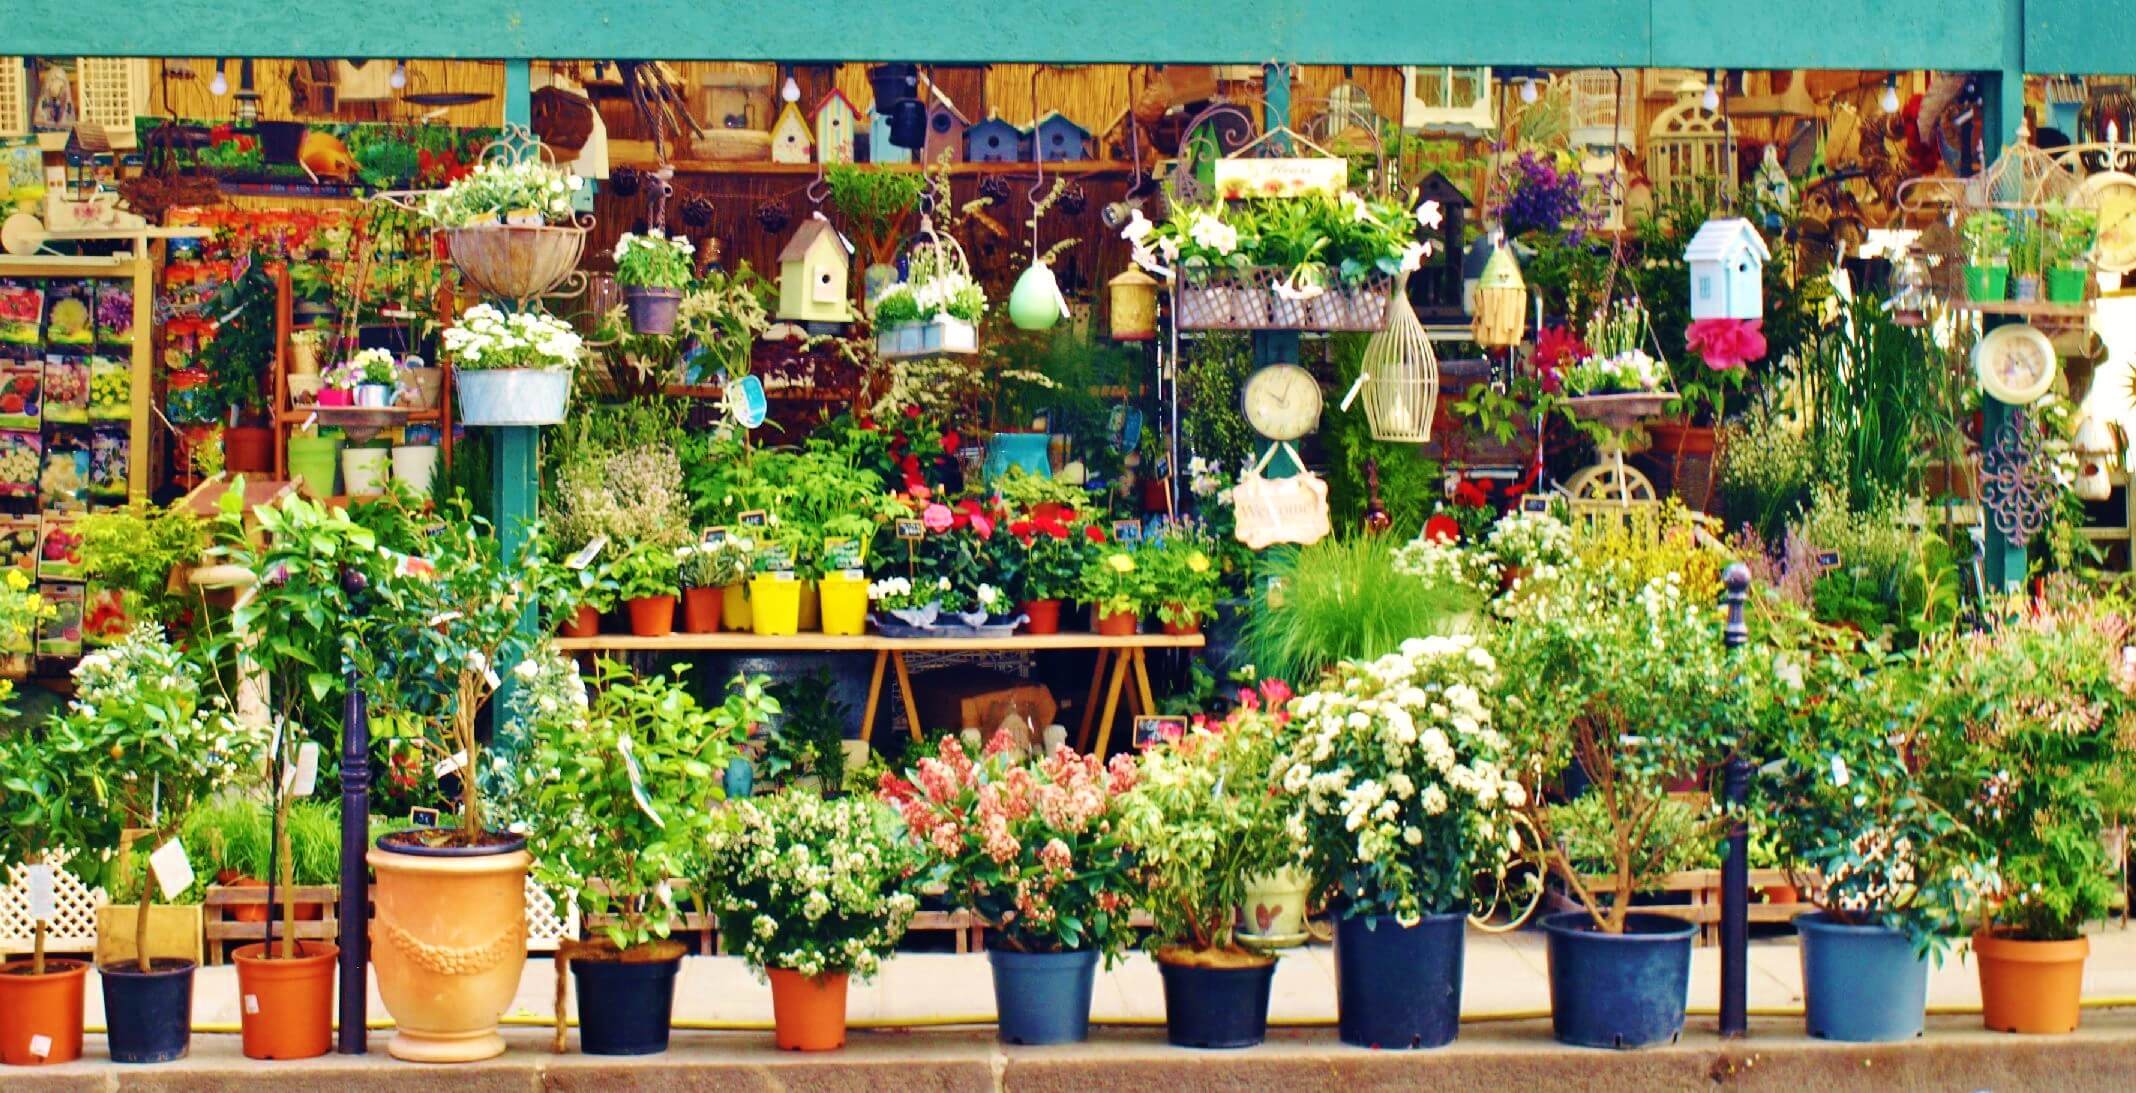 Mercado de las flores de París. Si buscas mercadillos de flores este es ideal.